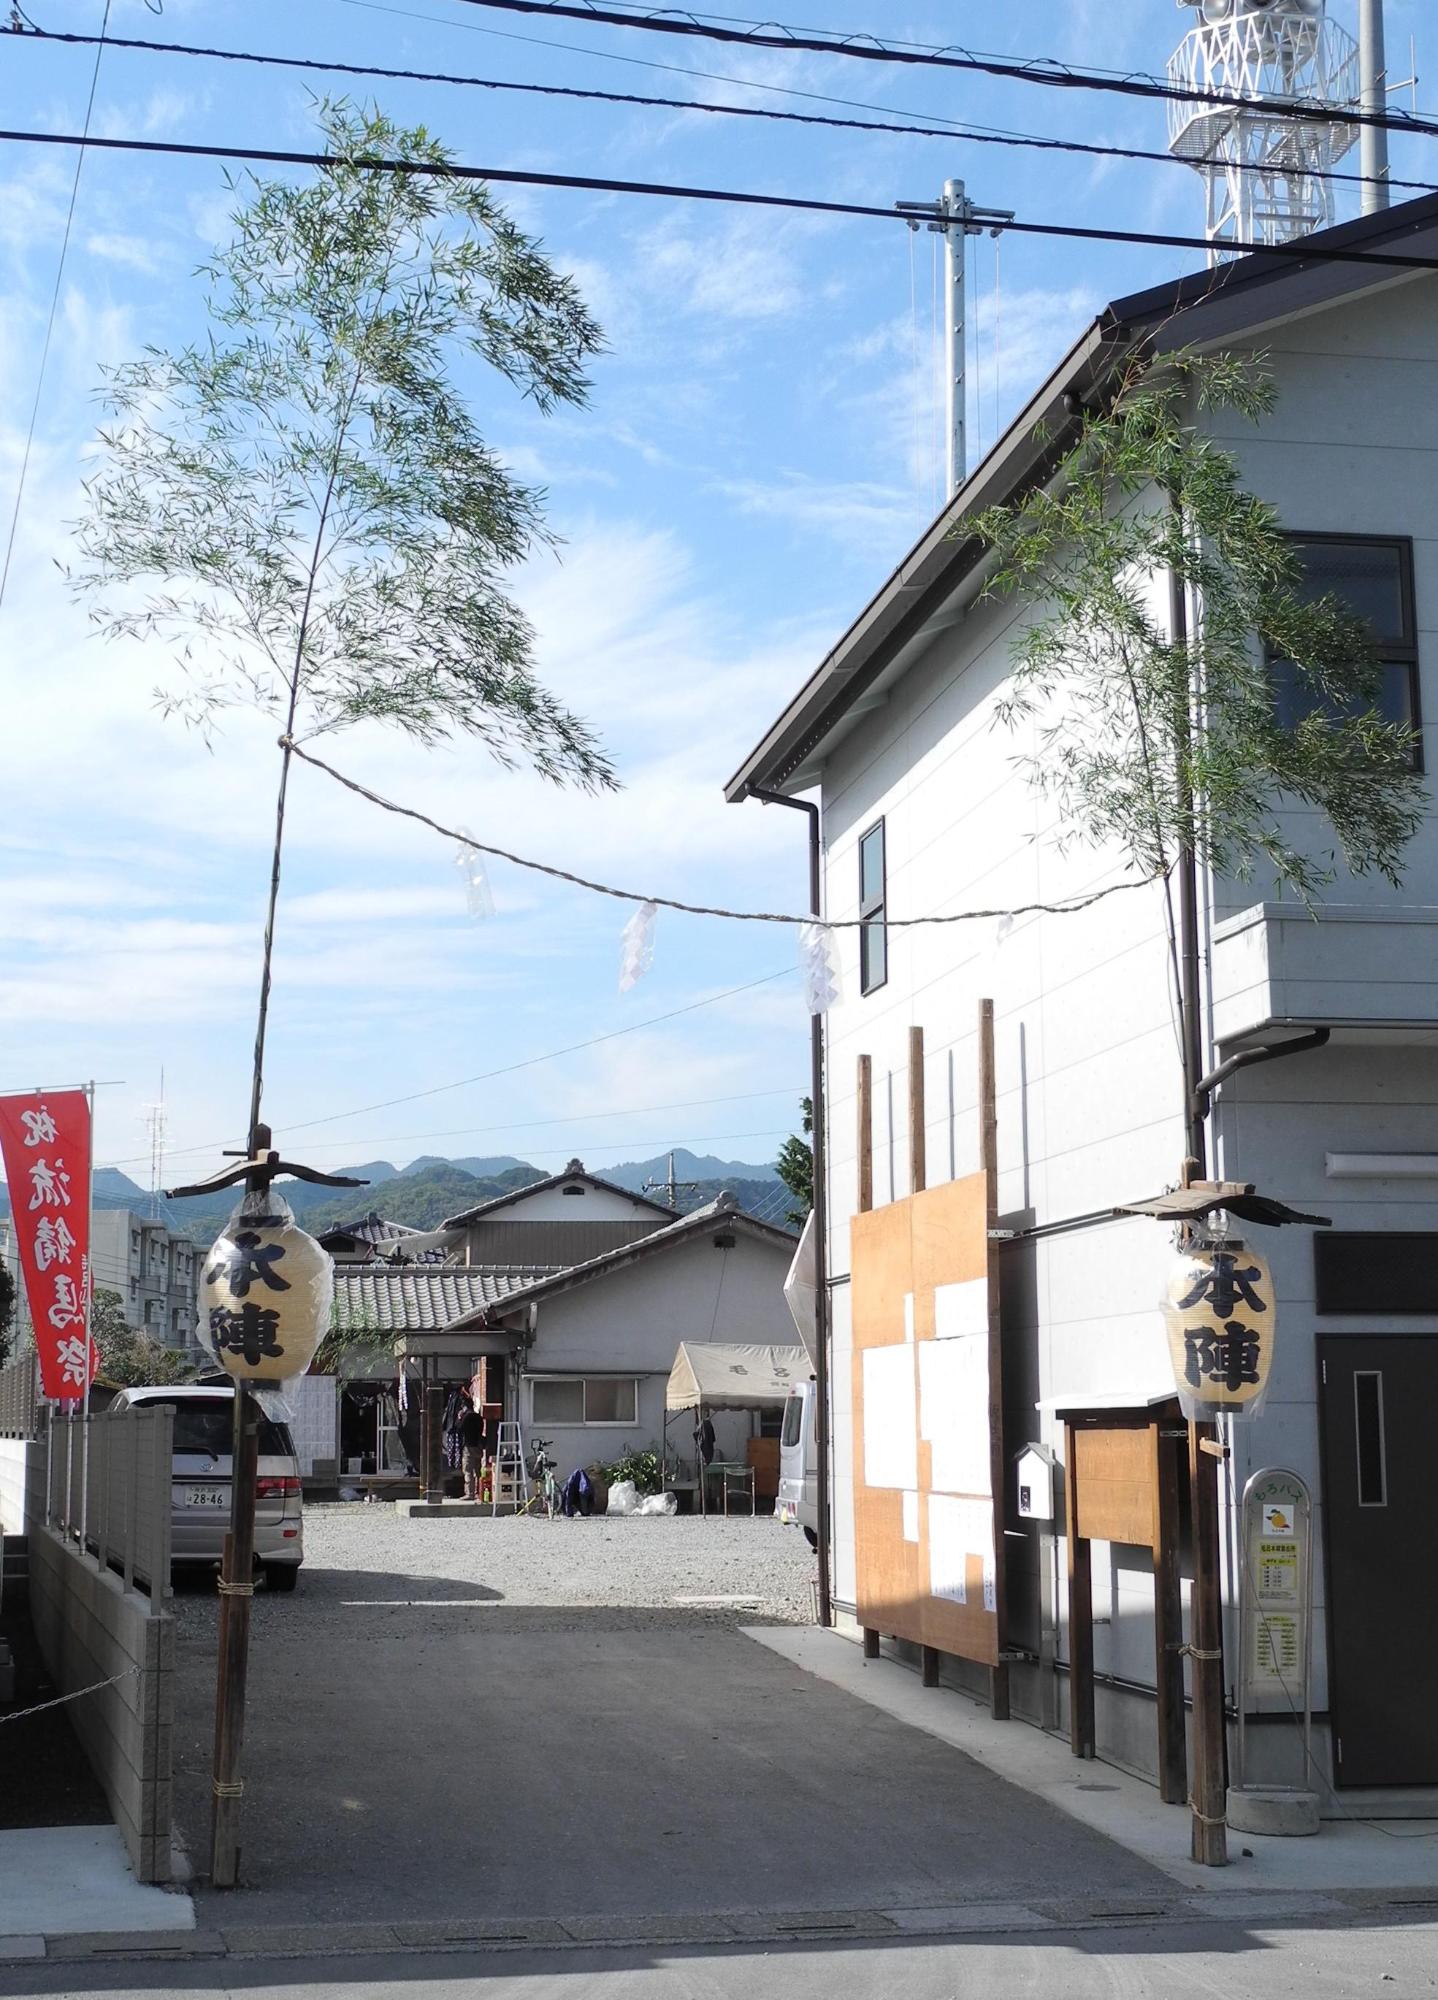 的宿の建物の左側の裏手に続く入り口両脇に、細長い笹の木が立ててあり、中央辺りに本陣と書かれた提灯が掛けられ、笹の葉の辺りに藁紐で繋いでいる写真